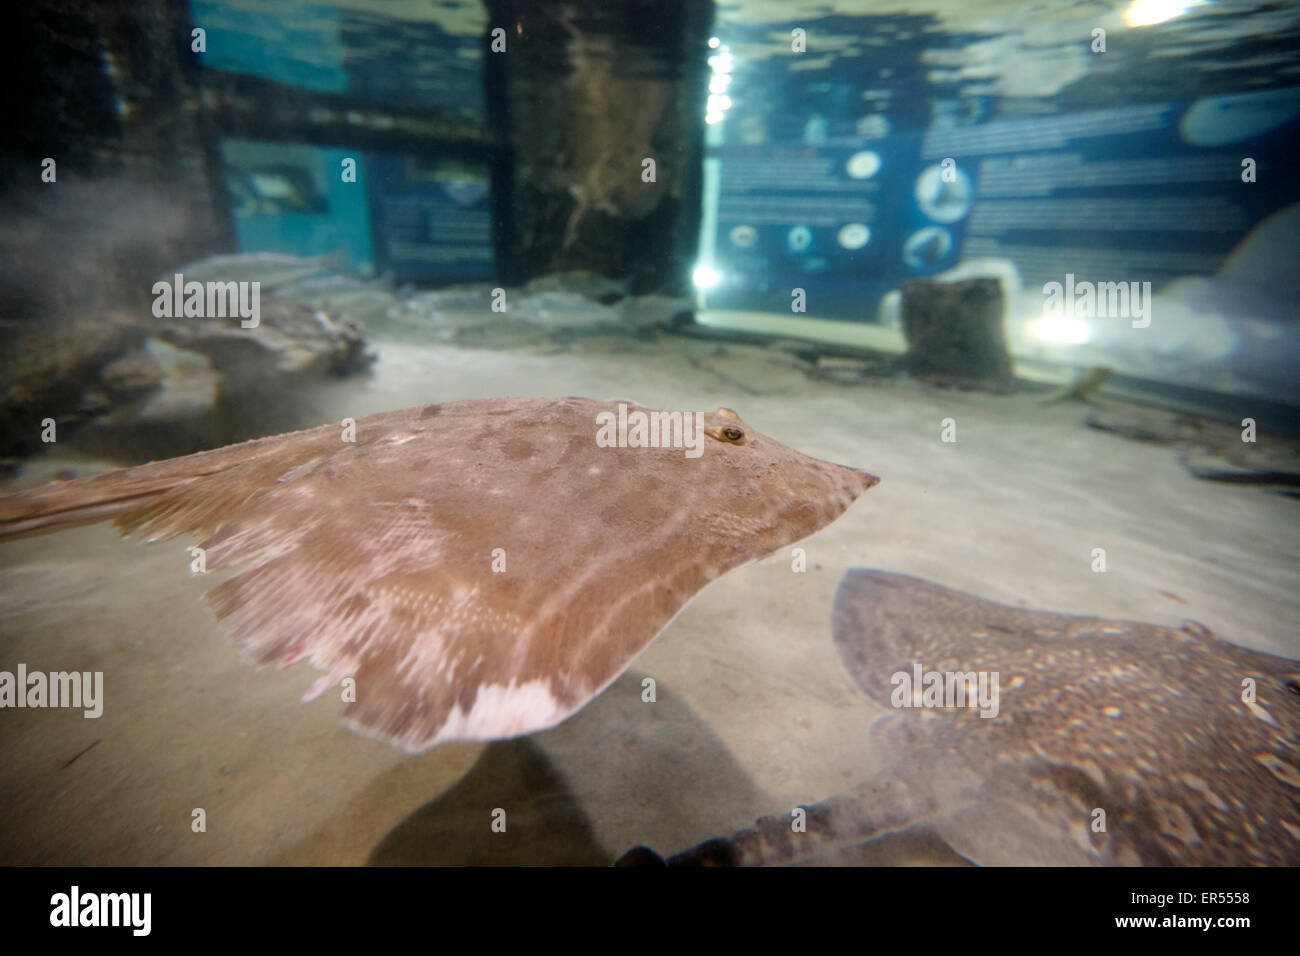 Thornback ray nuotare in acquario serbatoio nel Regno Unito Foto Stock